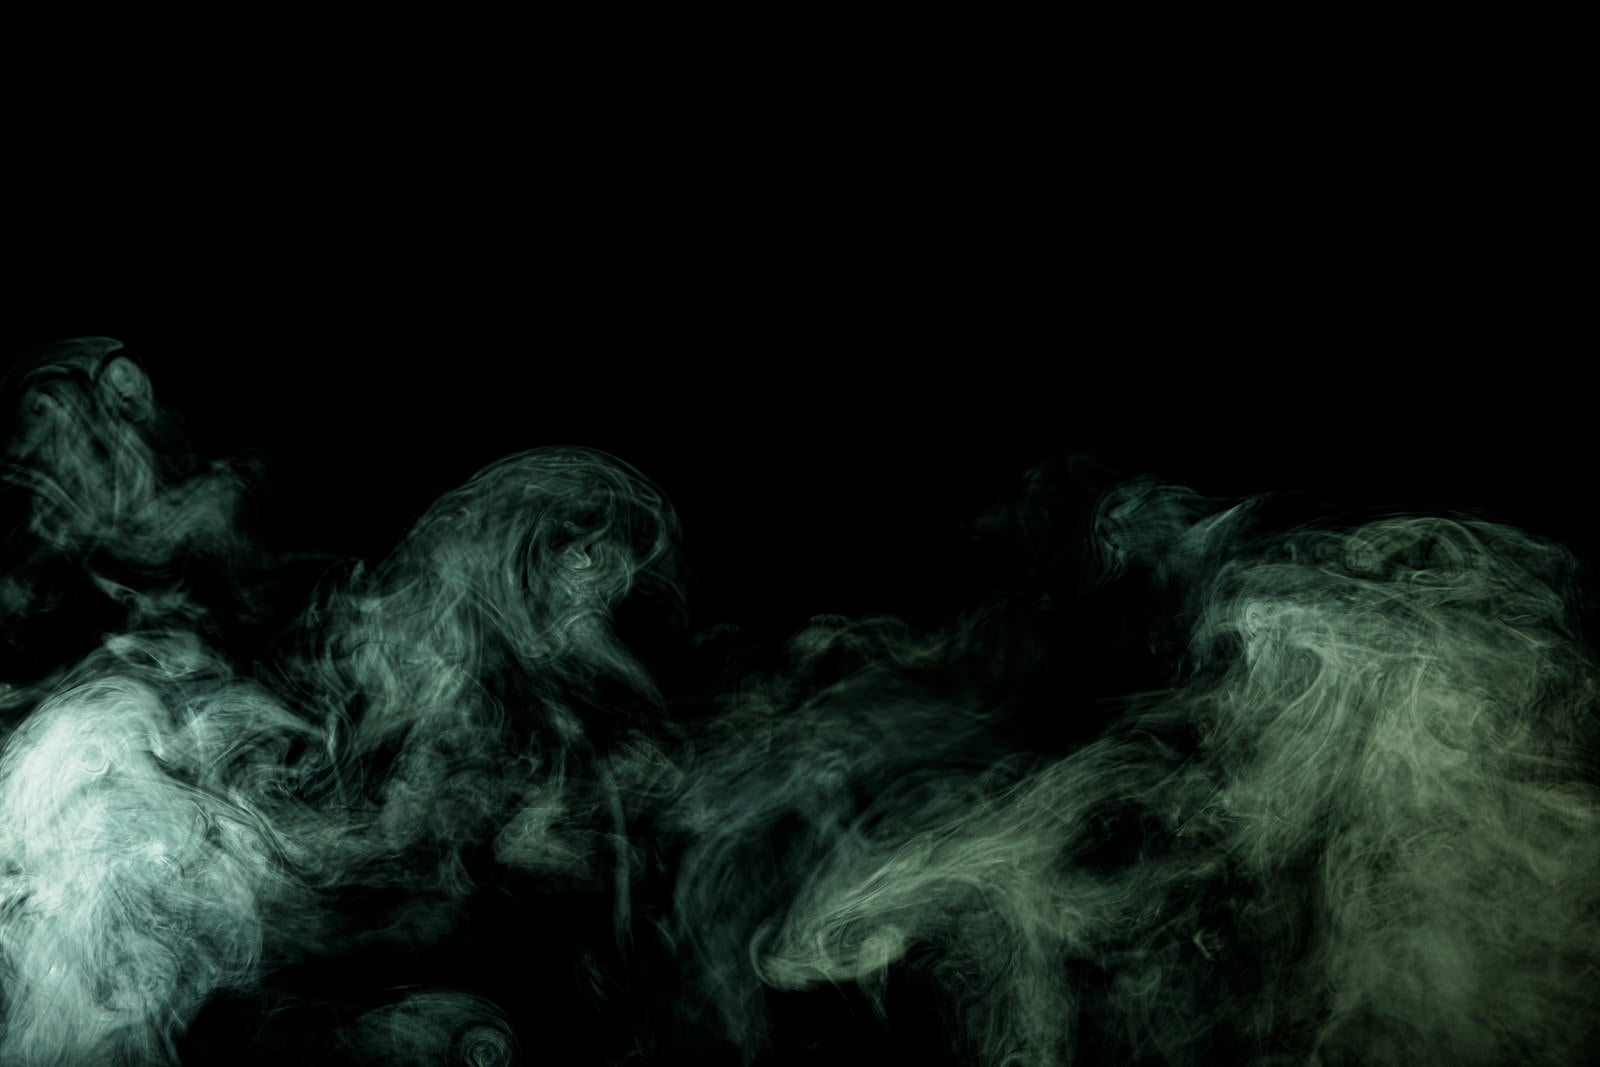 「緑色の煙の様子」の写真